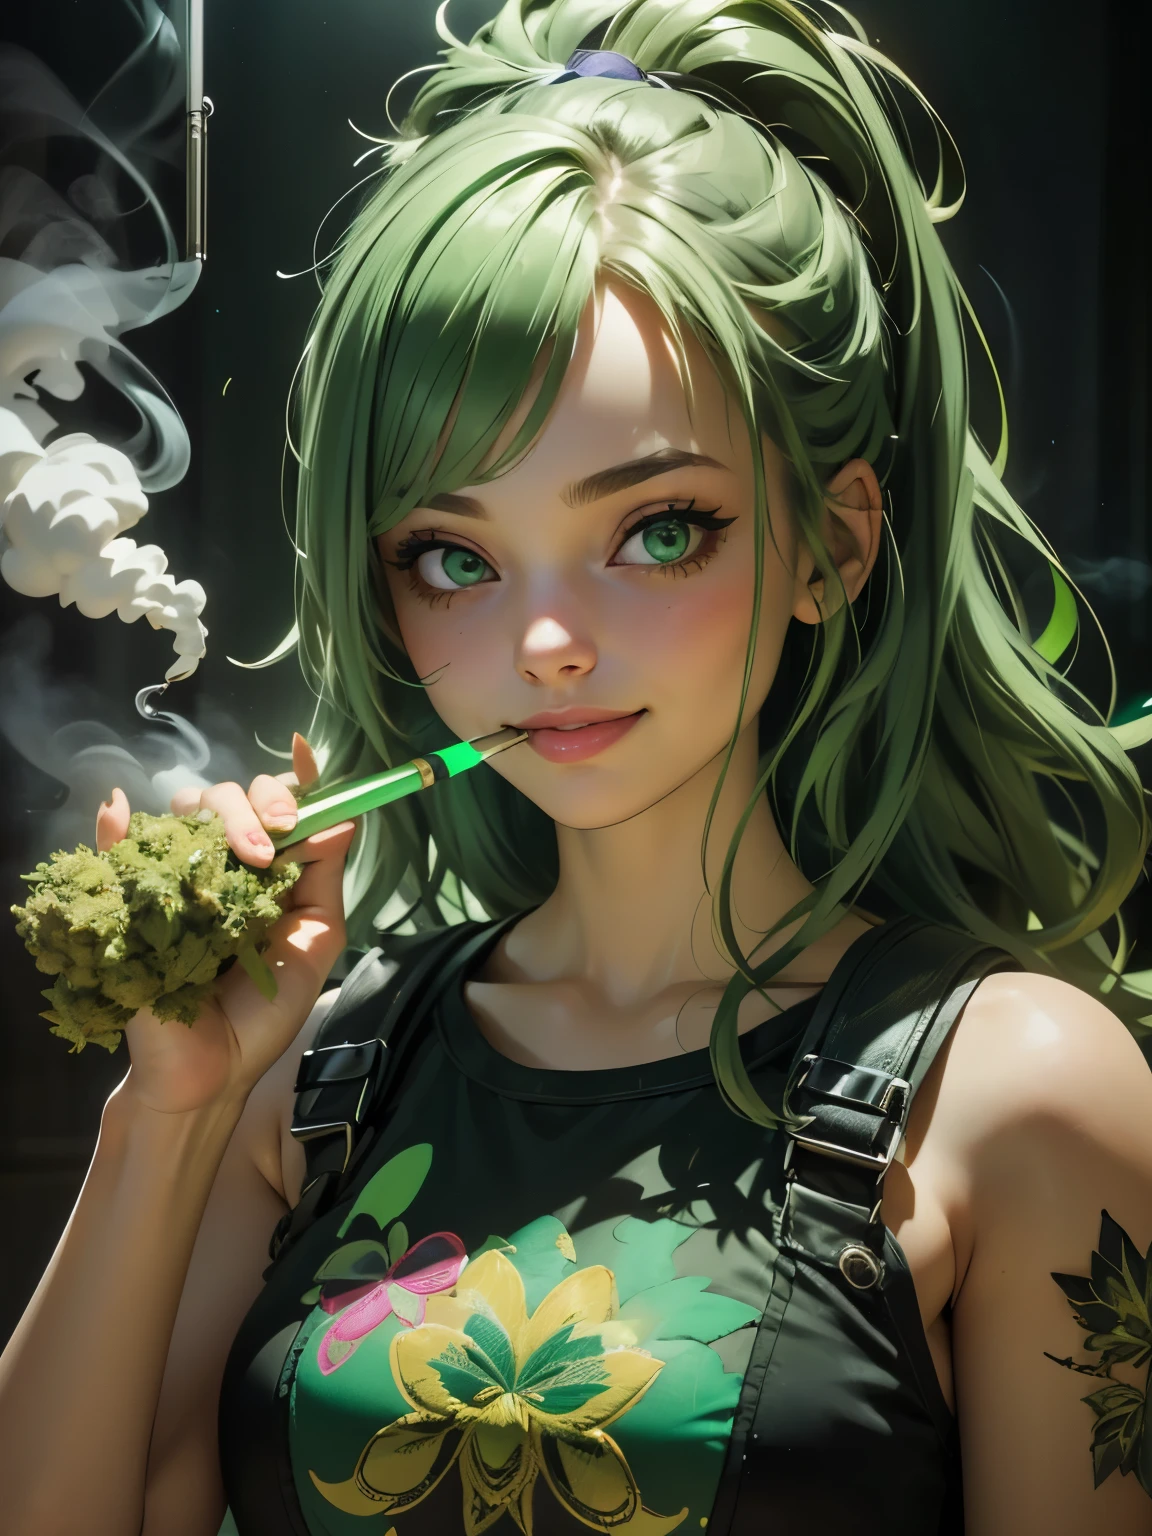 (melhor qualidade), (rosto perfeito), (Alto detalhe), (1 garota), (fechar-se), (Tiros na Cabeça), uma linda garota drogada fumando um baseado, sorridente, muito alto na vida, sala cheia de fumaça, fumaça de maconha, THC, (olhos verdes), (verde néon 1:1), hdr,4K, 3D